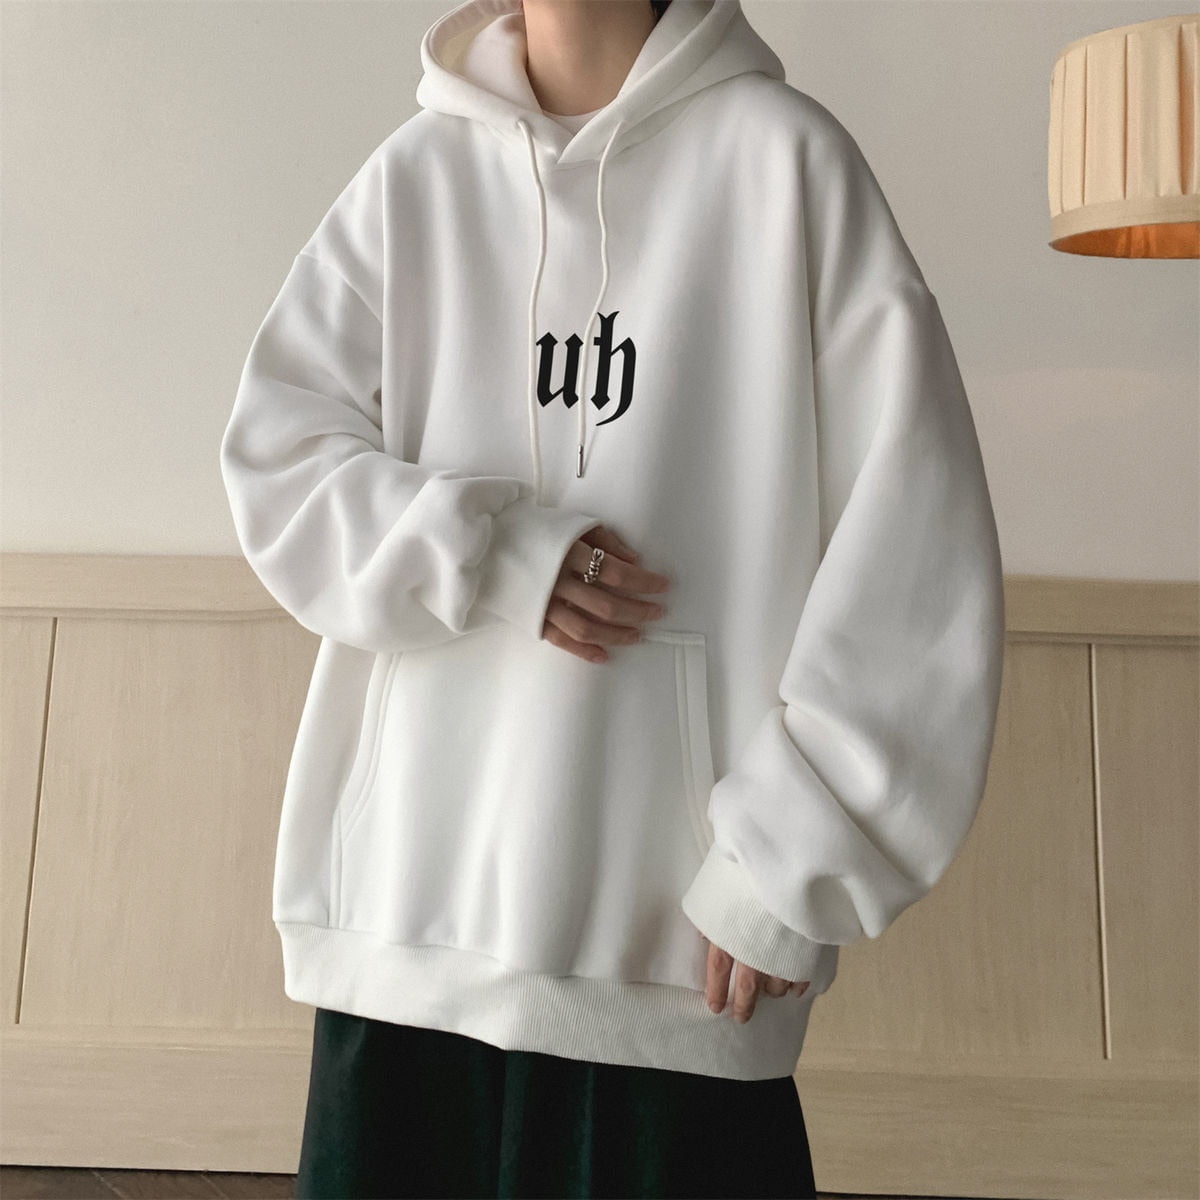 hoodies "UH" fashion